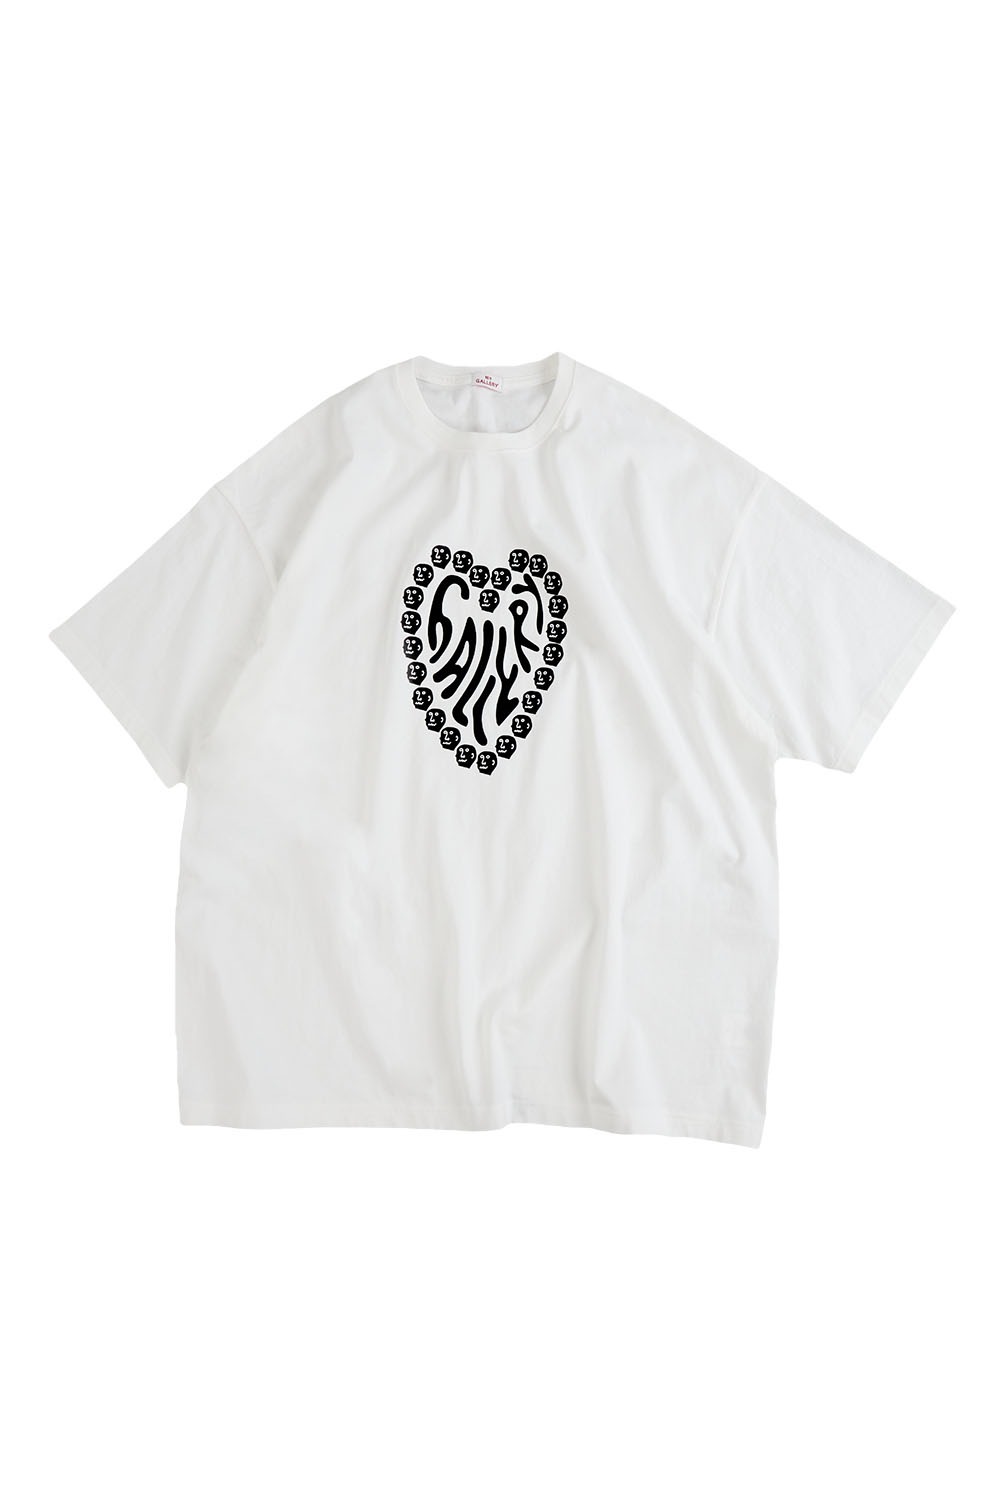 Gallery Overfit Heart Face T-shirt